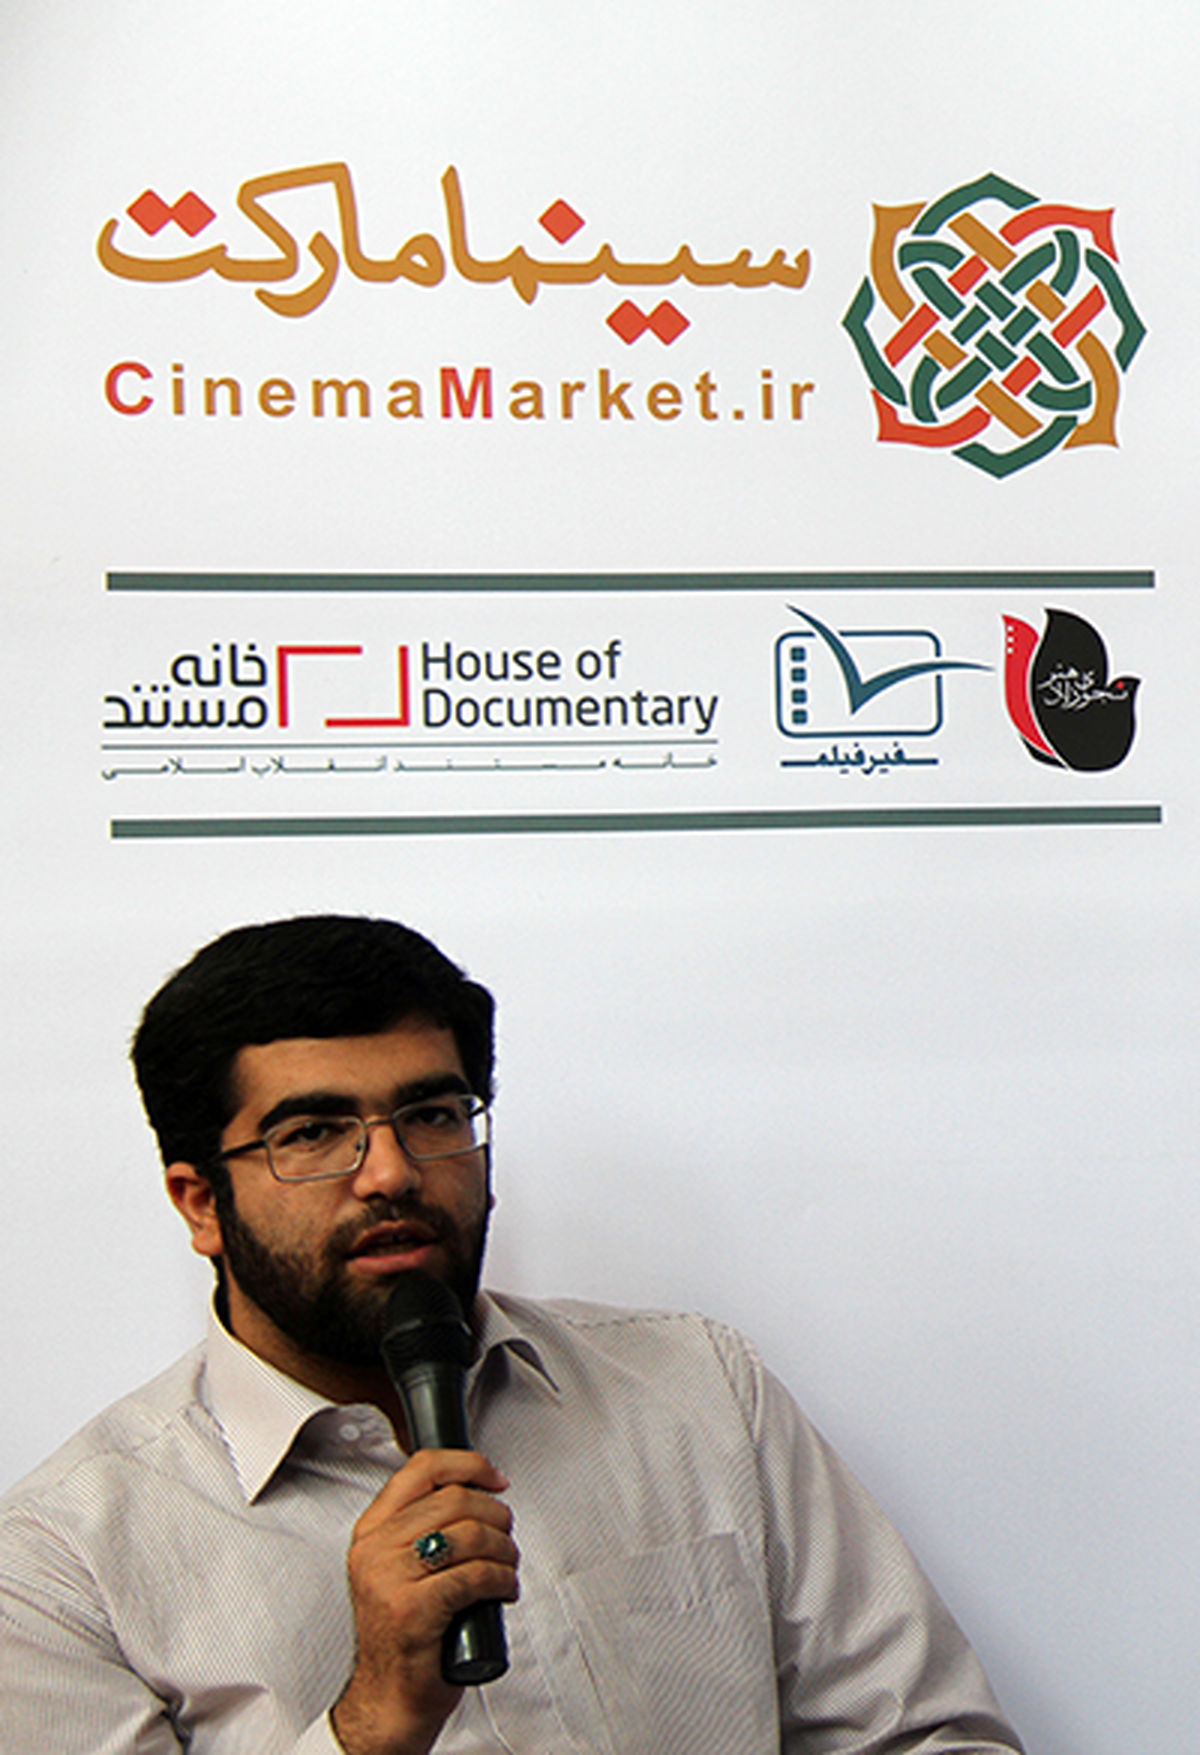 "سینما مارکت" به همت سه موسسه سینمایی رونمایی شد